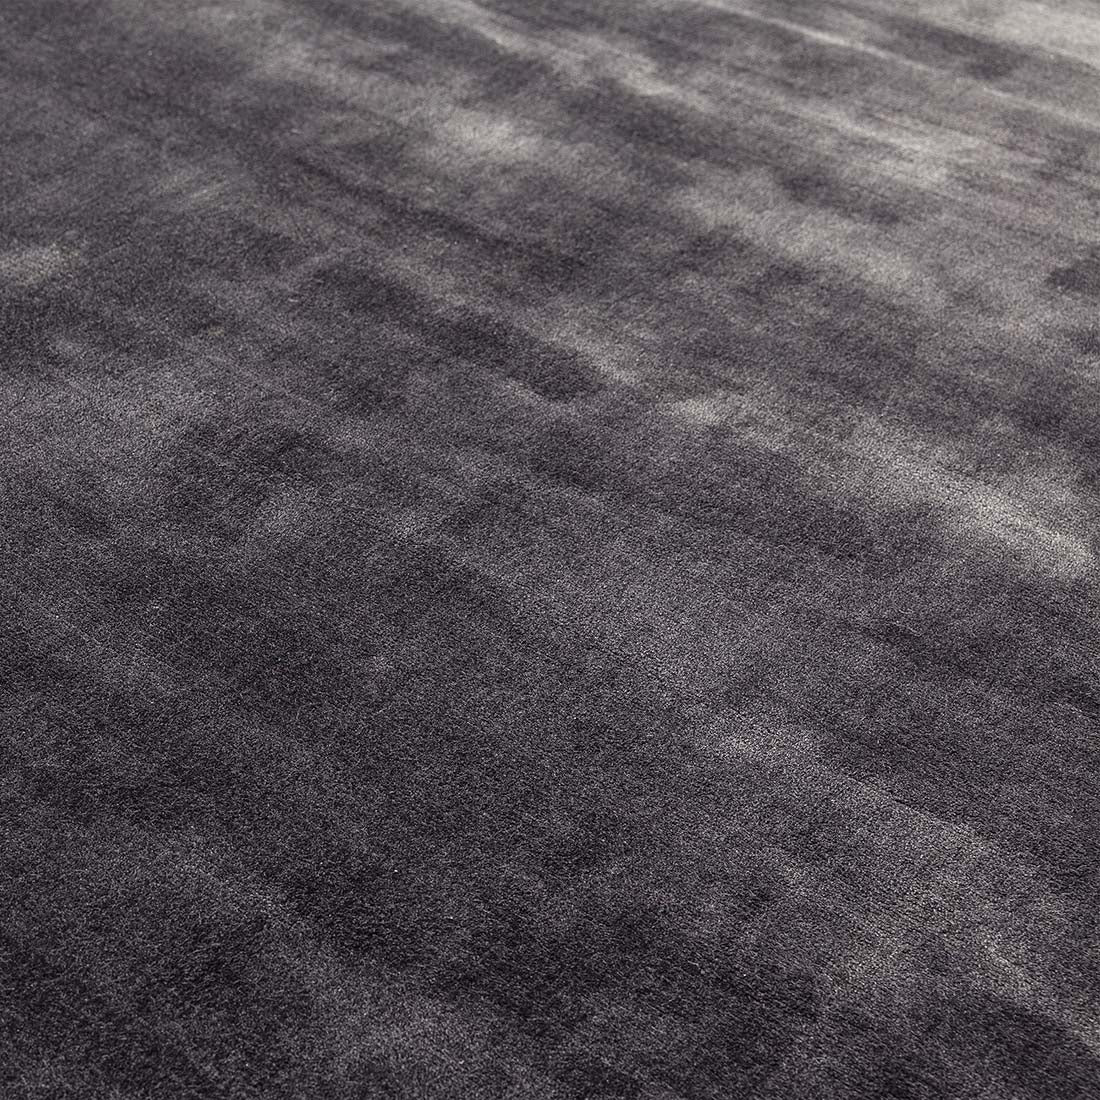 shiny dark grey modern rug in a plain style
